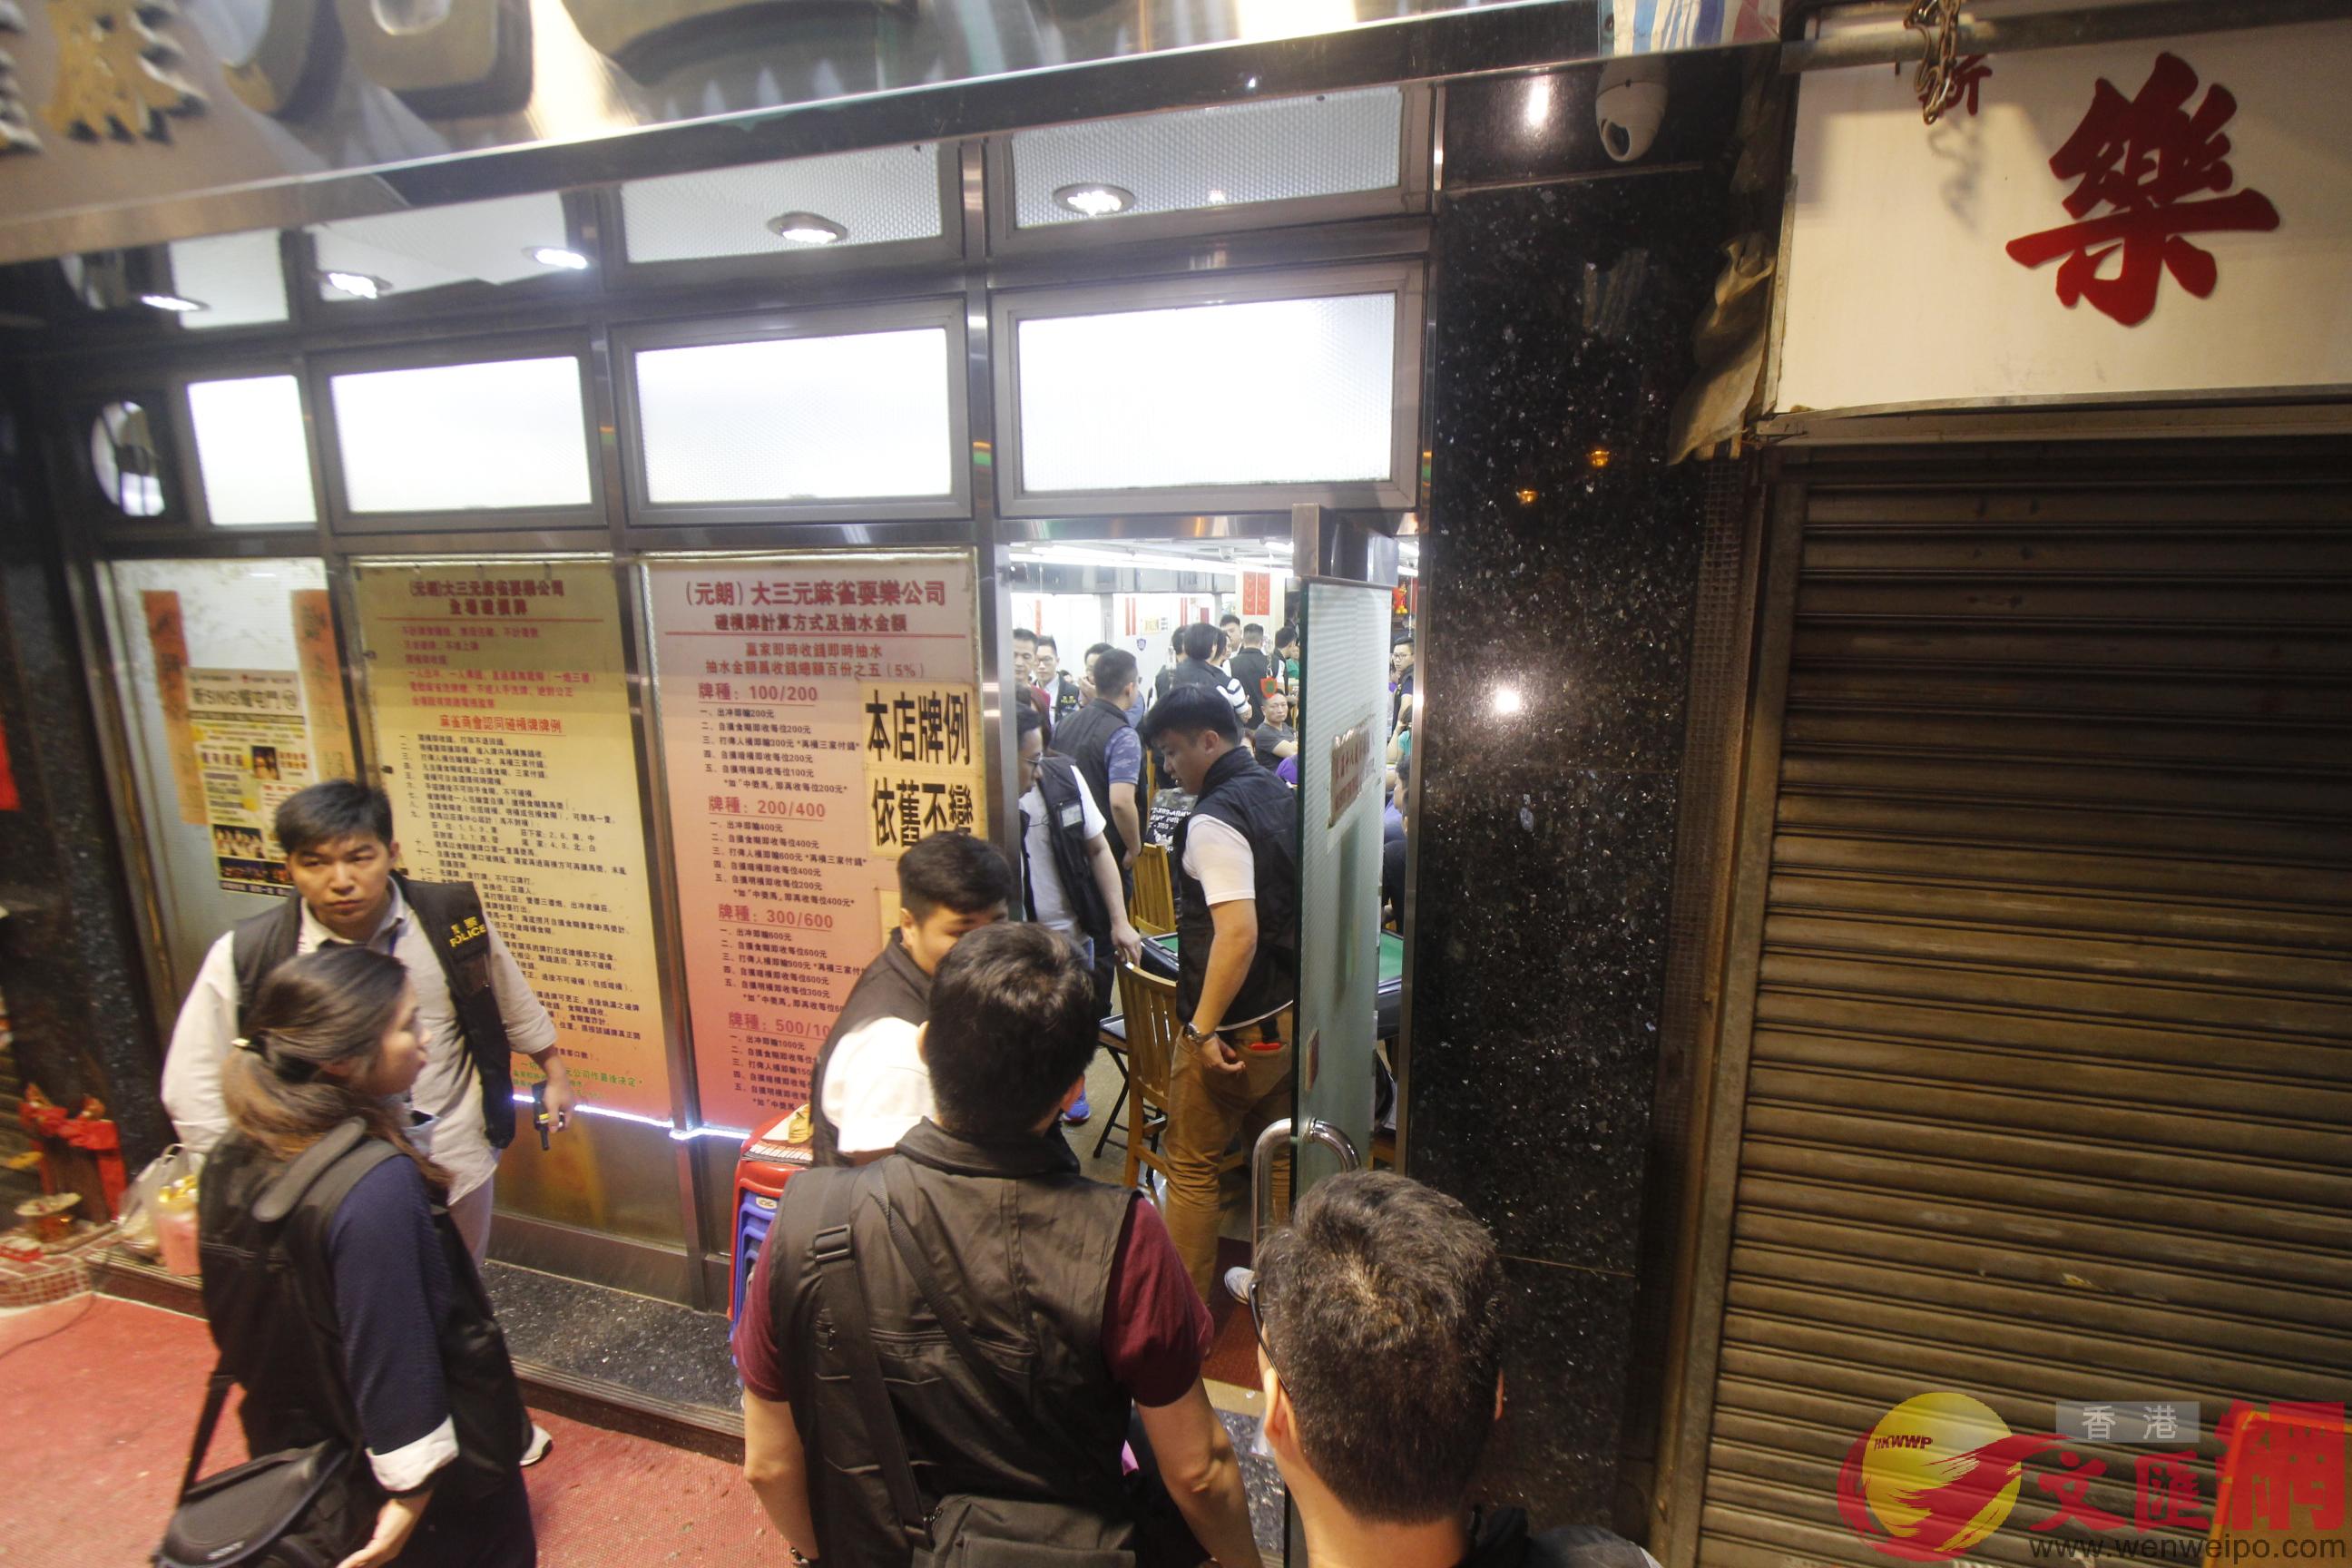 警方昨晚再到元朗一帶娛樂場所進行查牌；圖為探員到炮仗坊一間麻雀館巡查。香港文匯報記者攝